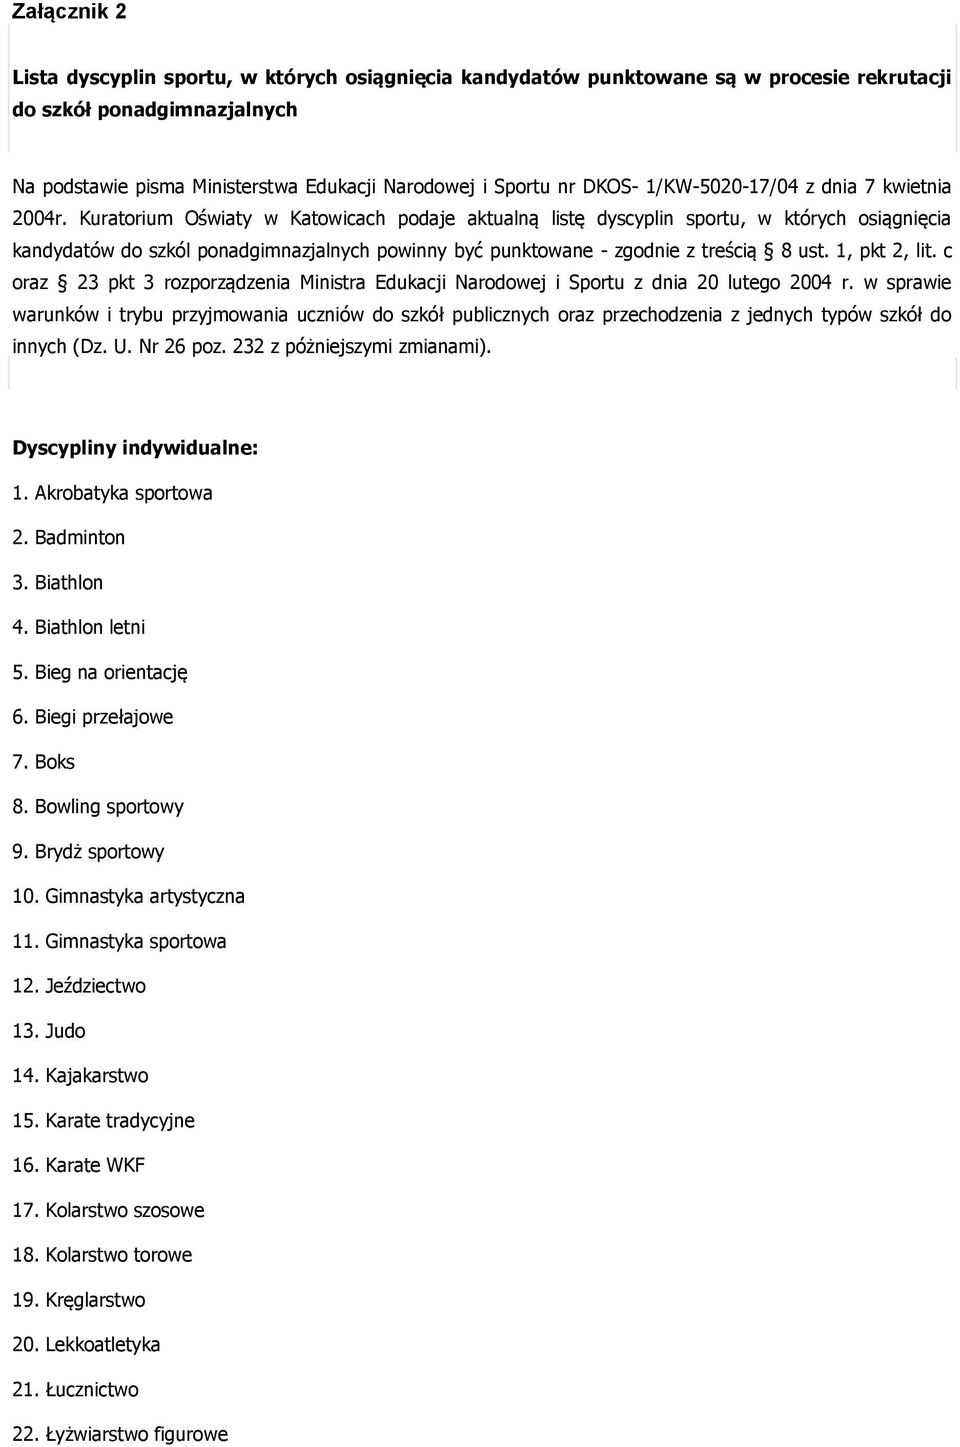 Kuratorium Oświaty w Katowicach podaje aktualną listę dyscyplin sportu, w których osiągnięcia kandydatów do szkól ponadgimnazjalnych powinny być punktowane - zgodnie z treścią 8 ust. 1, pkt 2, lit.